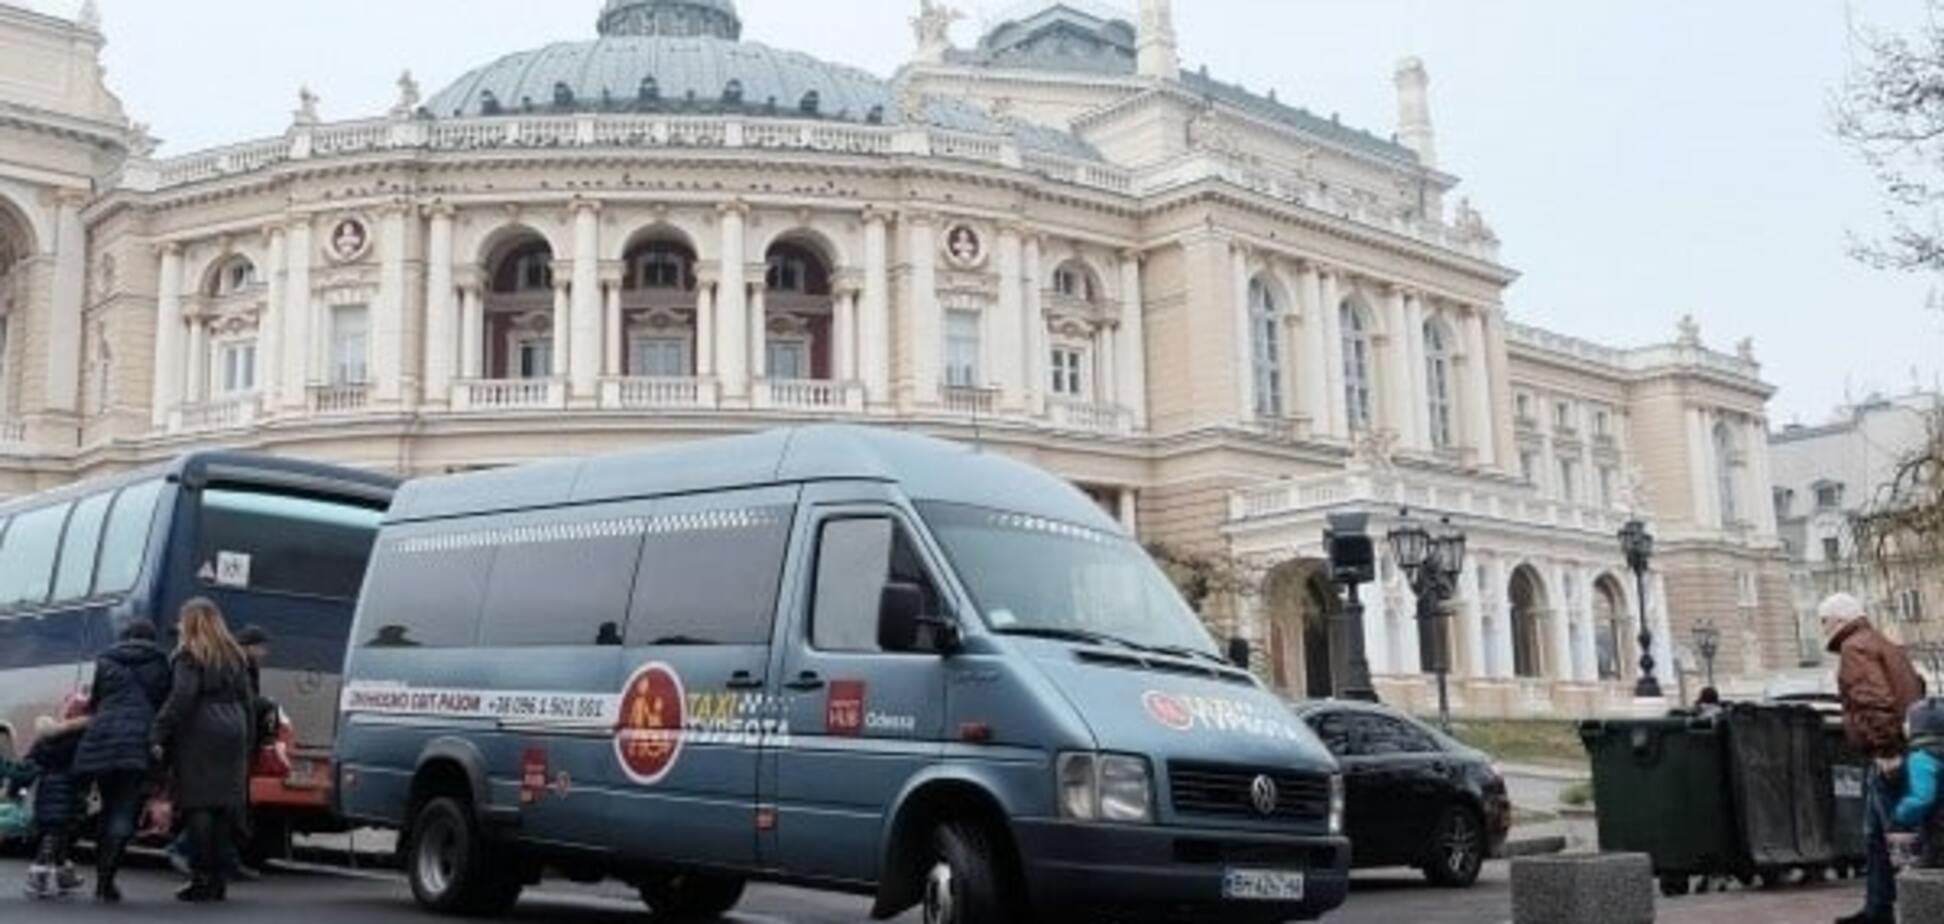 Рука помощи: в Украине появилось специальное такси для инвалидов